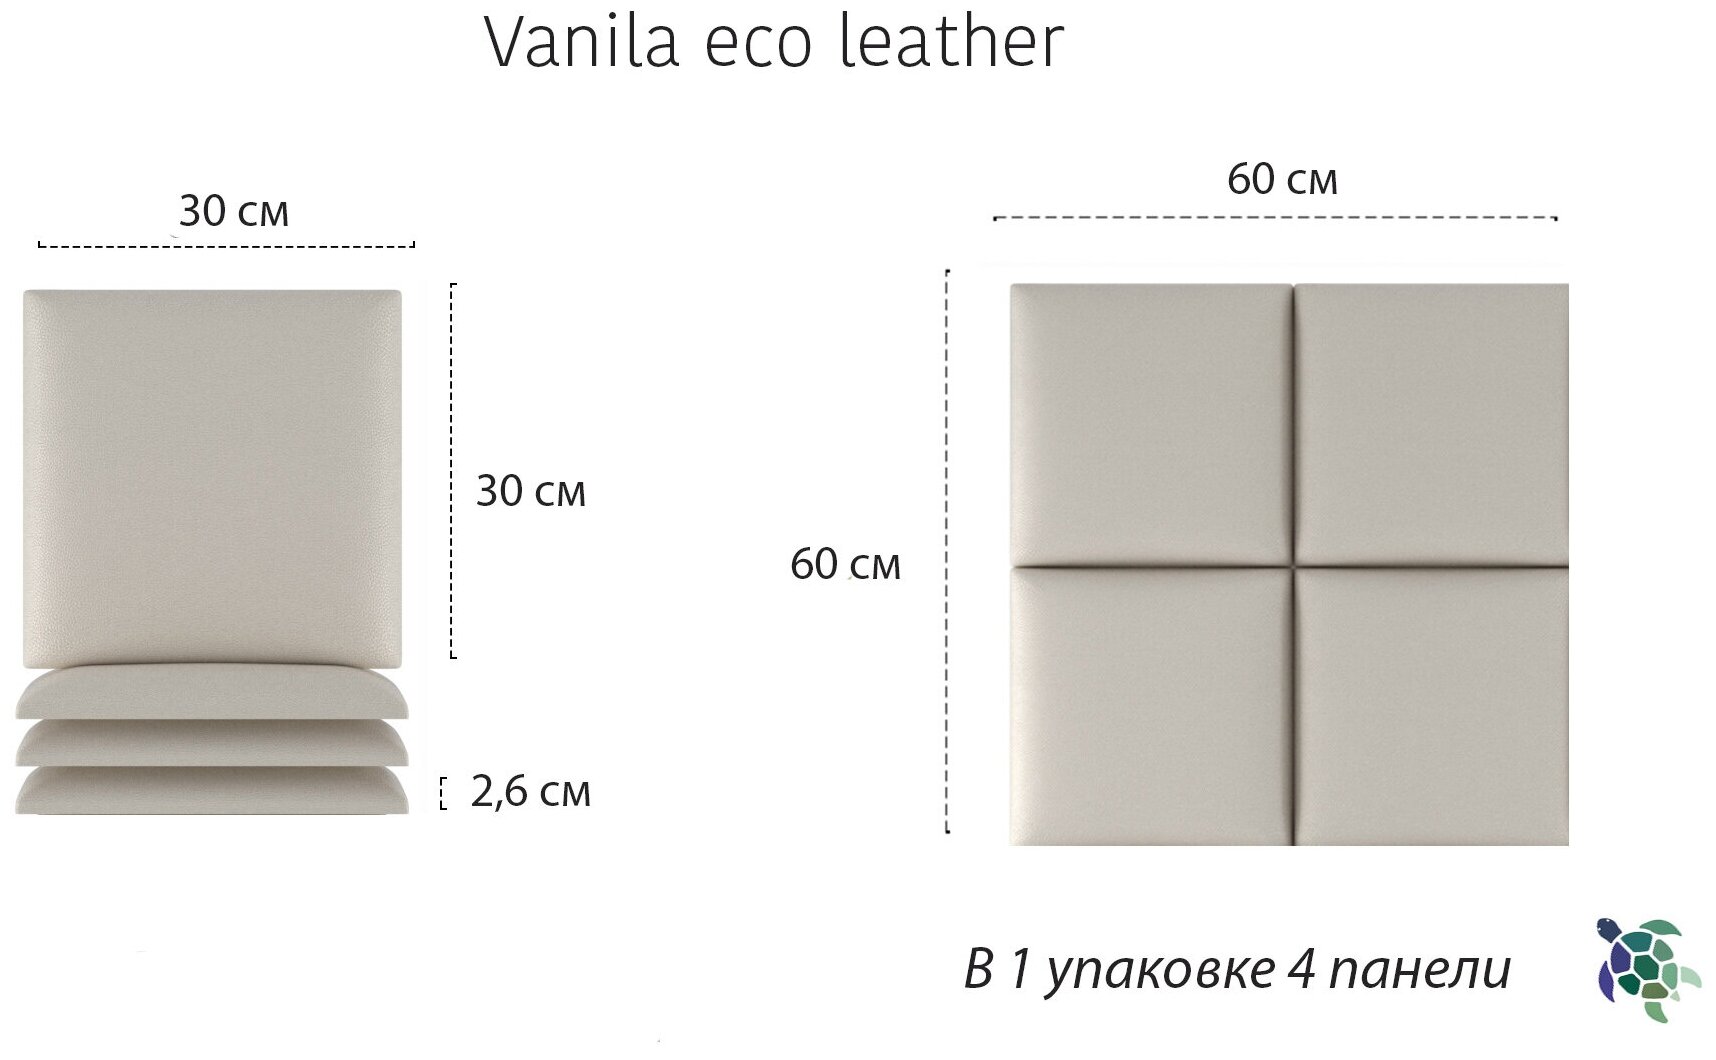 Мягкие самоклеящиеся панели eco leather Vanila 30 x 30 (4 шт) - фотография № 2